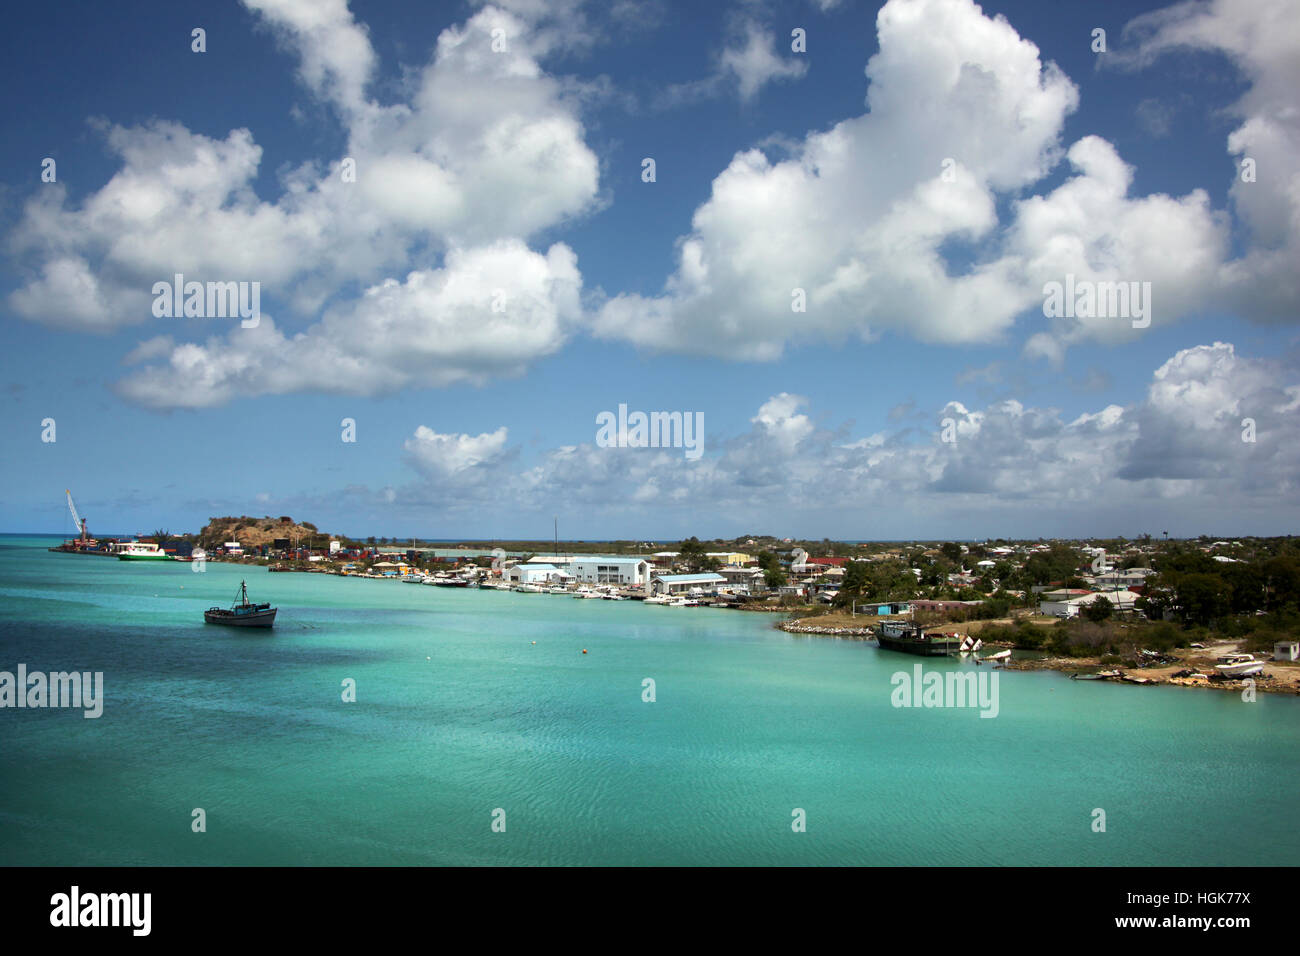 Blauer Himmel & türkisfarbenem Wasser. Aus Port St John's, Antigua an einem schönen Tag, Caribbean Kreuzfahrt. Stockfoto